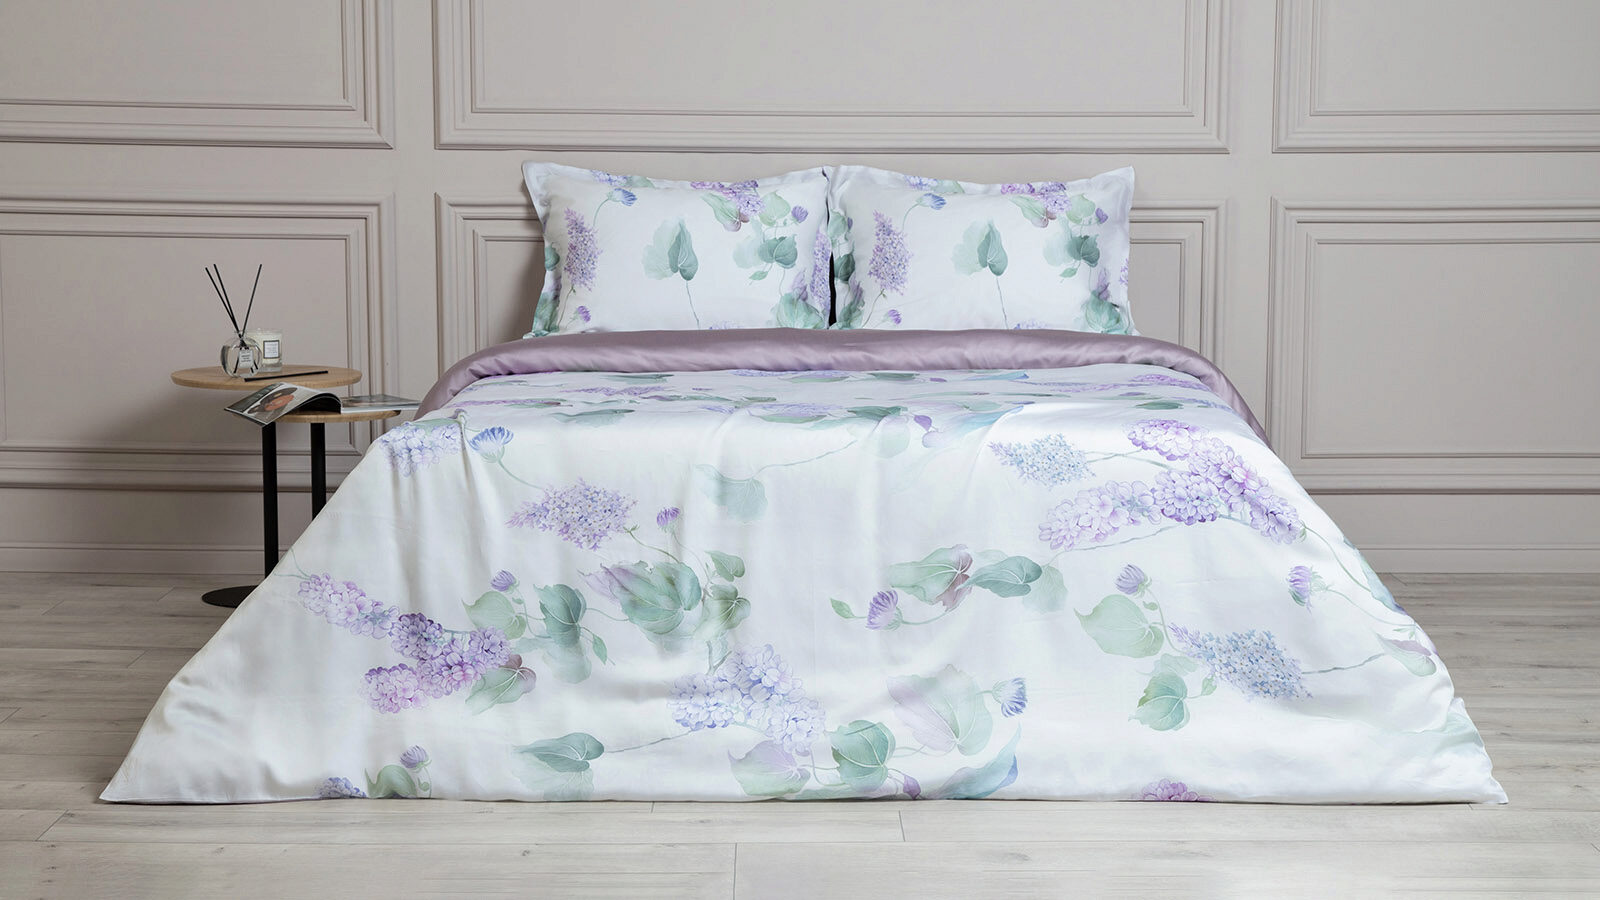 Комплект постельного белья Trend Tencel Lilac комплект одеяло beat 2 подушка sky комплект постельного белья comfort cotton льняной